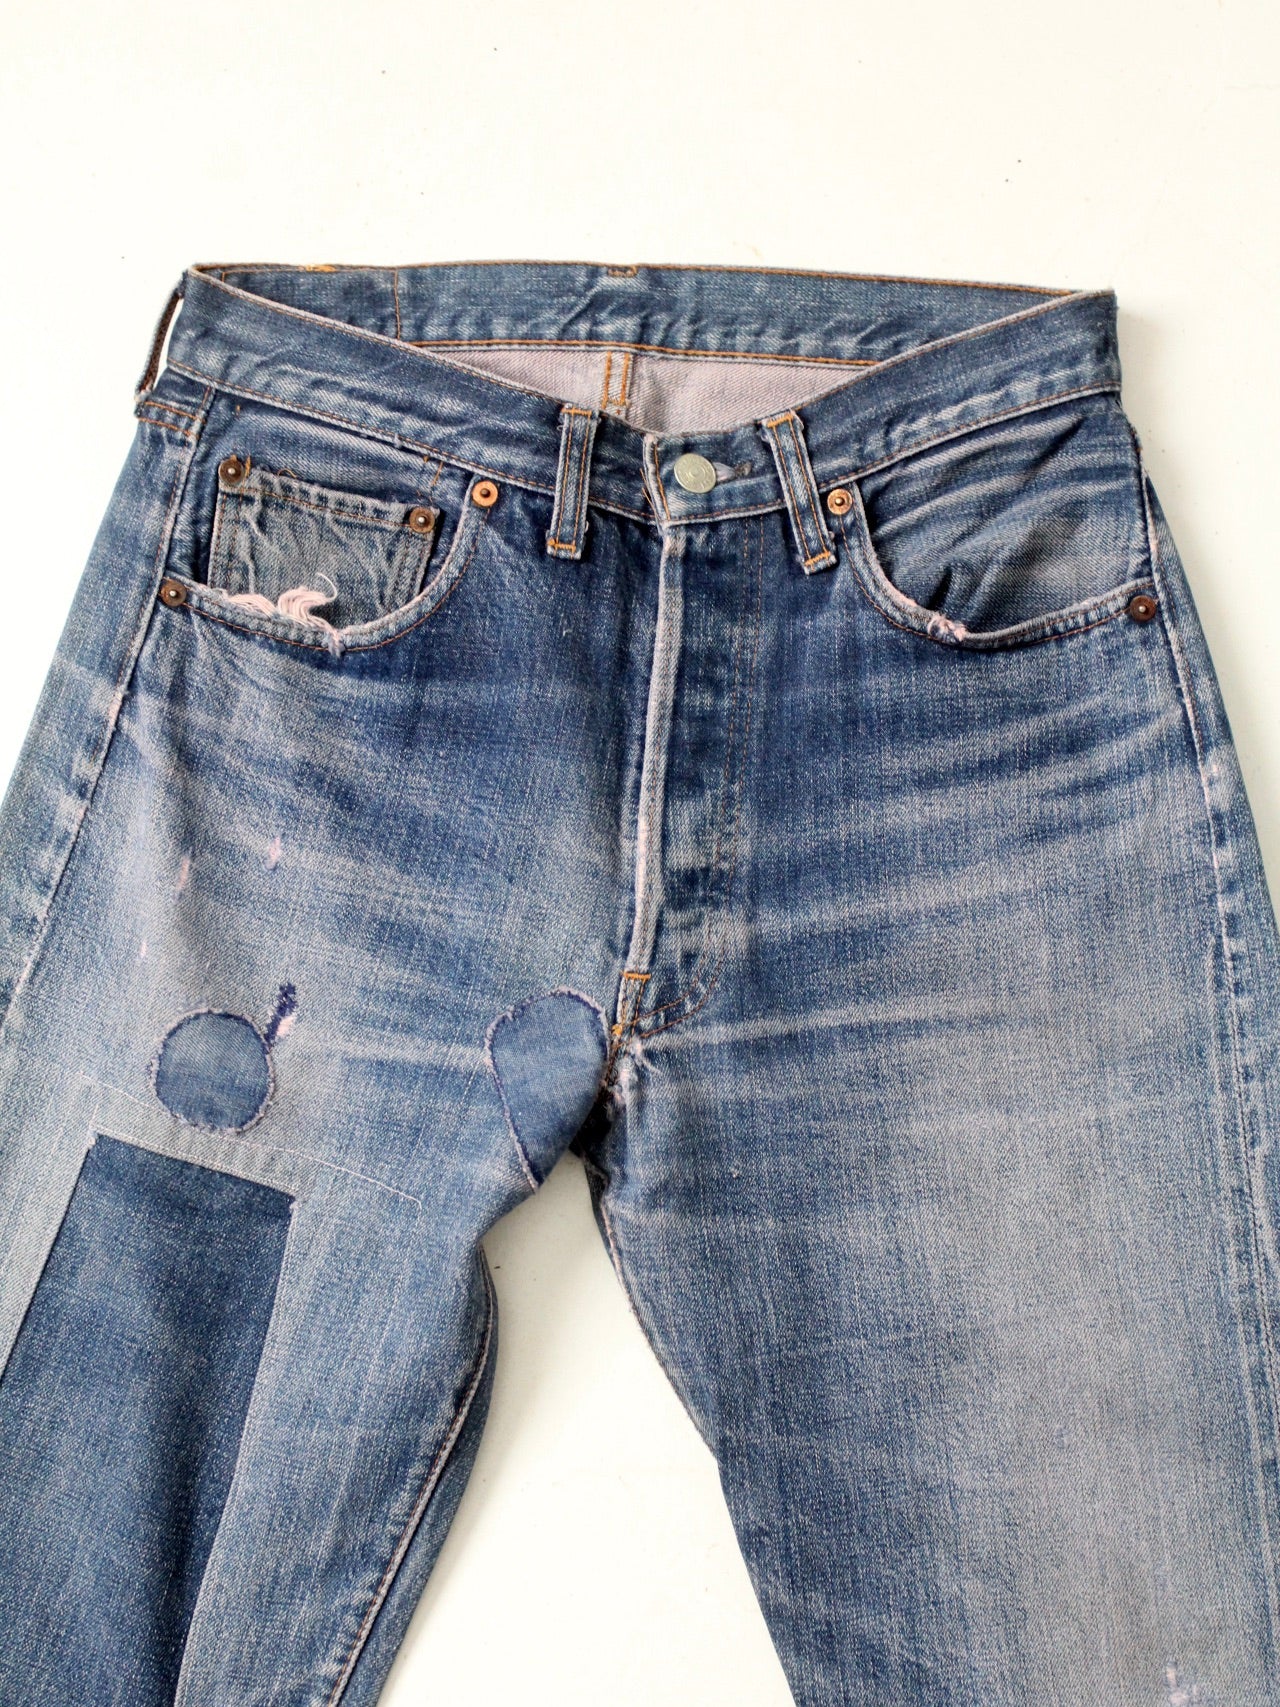 vintage patched Levi's 501 Big E jeans 29 x 29 – 86 Vintage